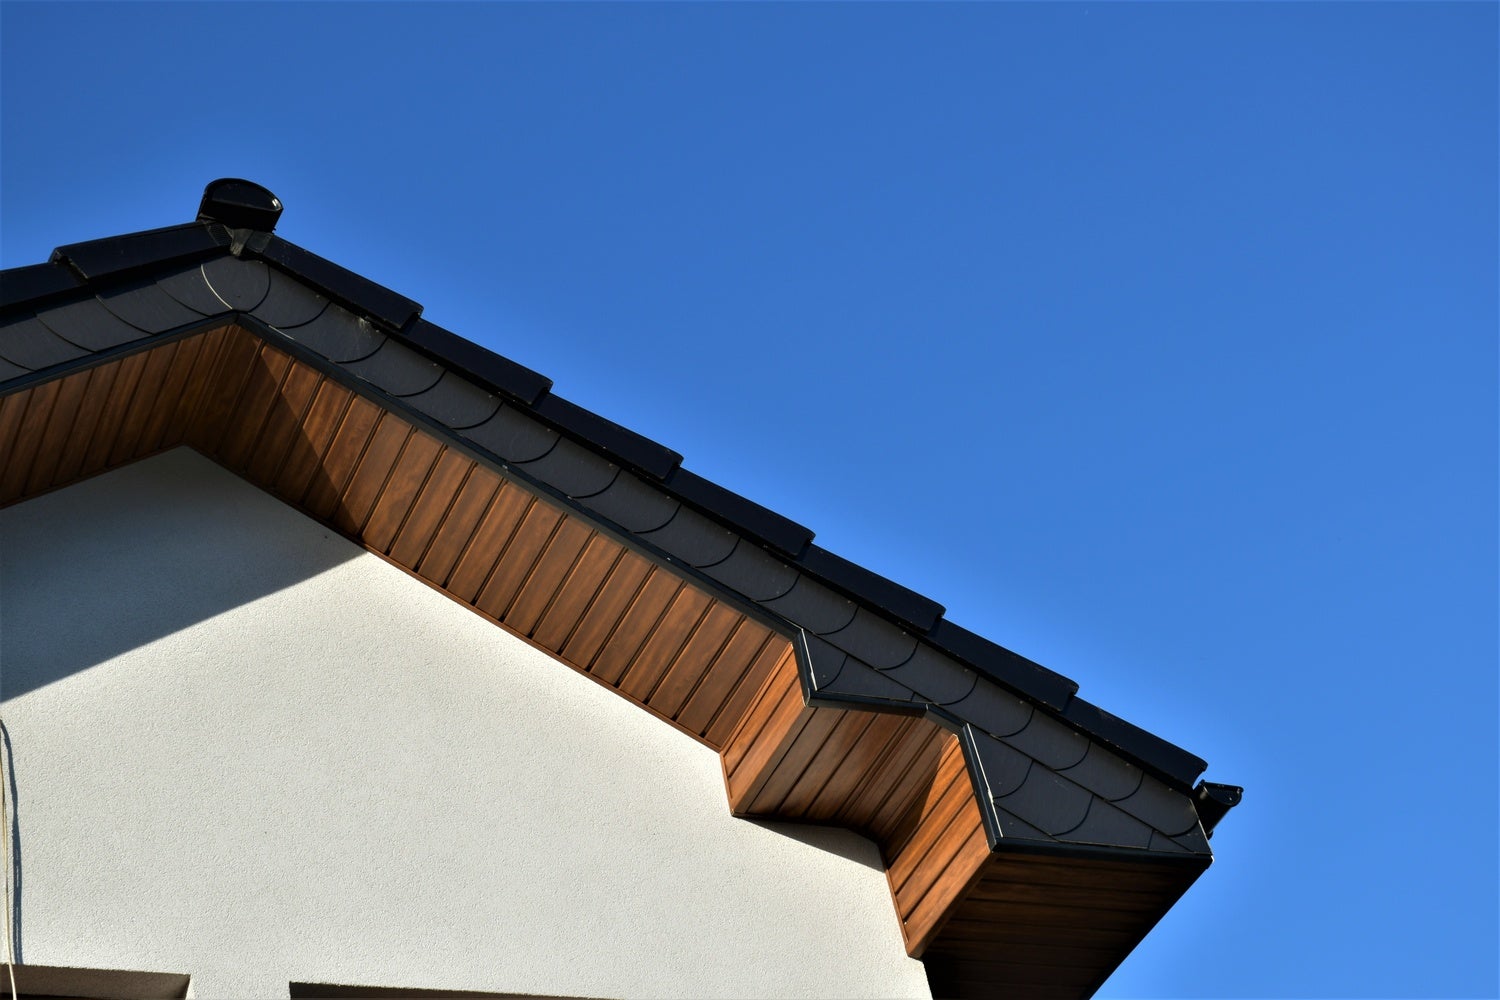 Podbitka dachowa – drewno czy PVC. Wady i zalety